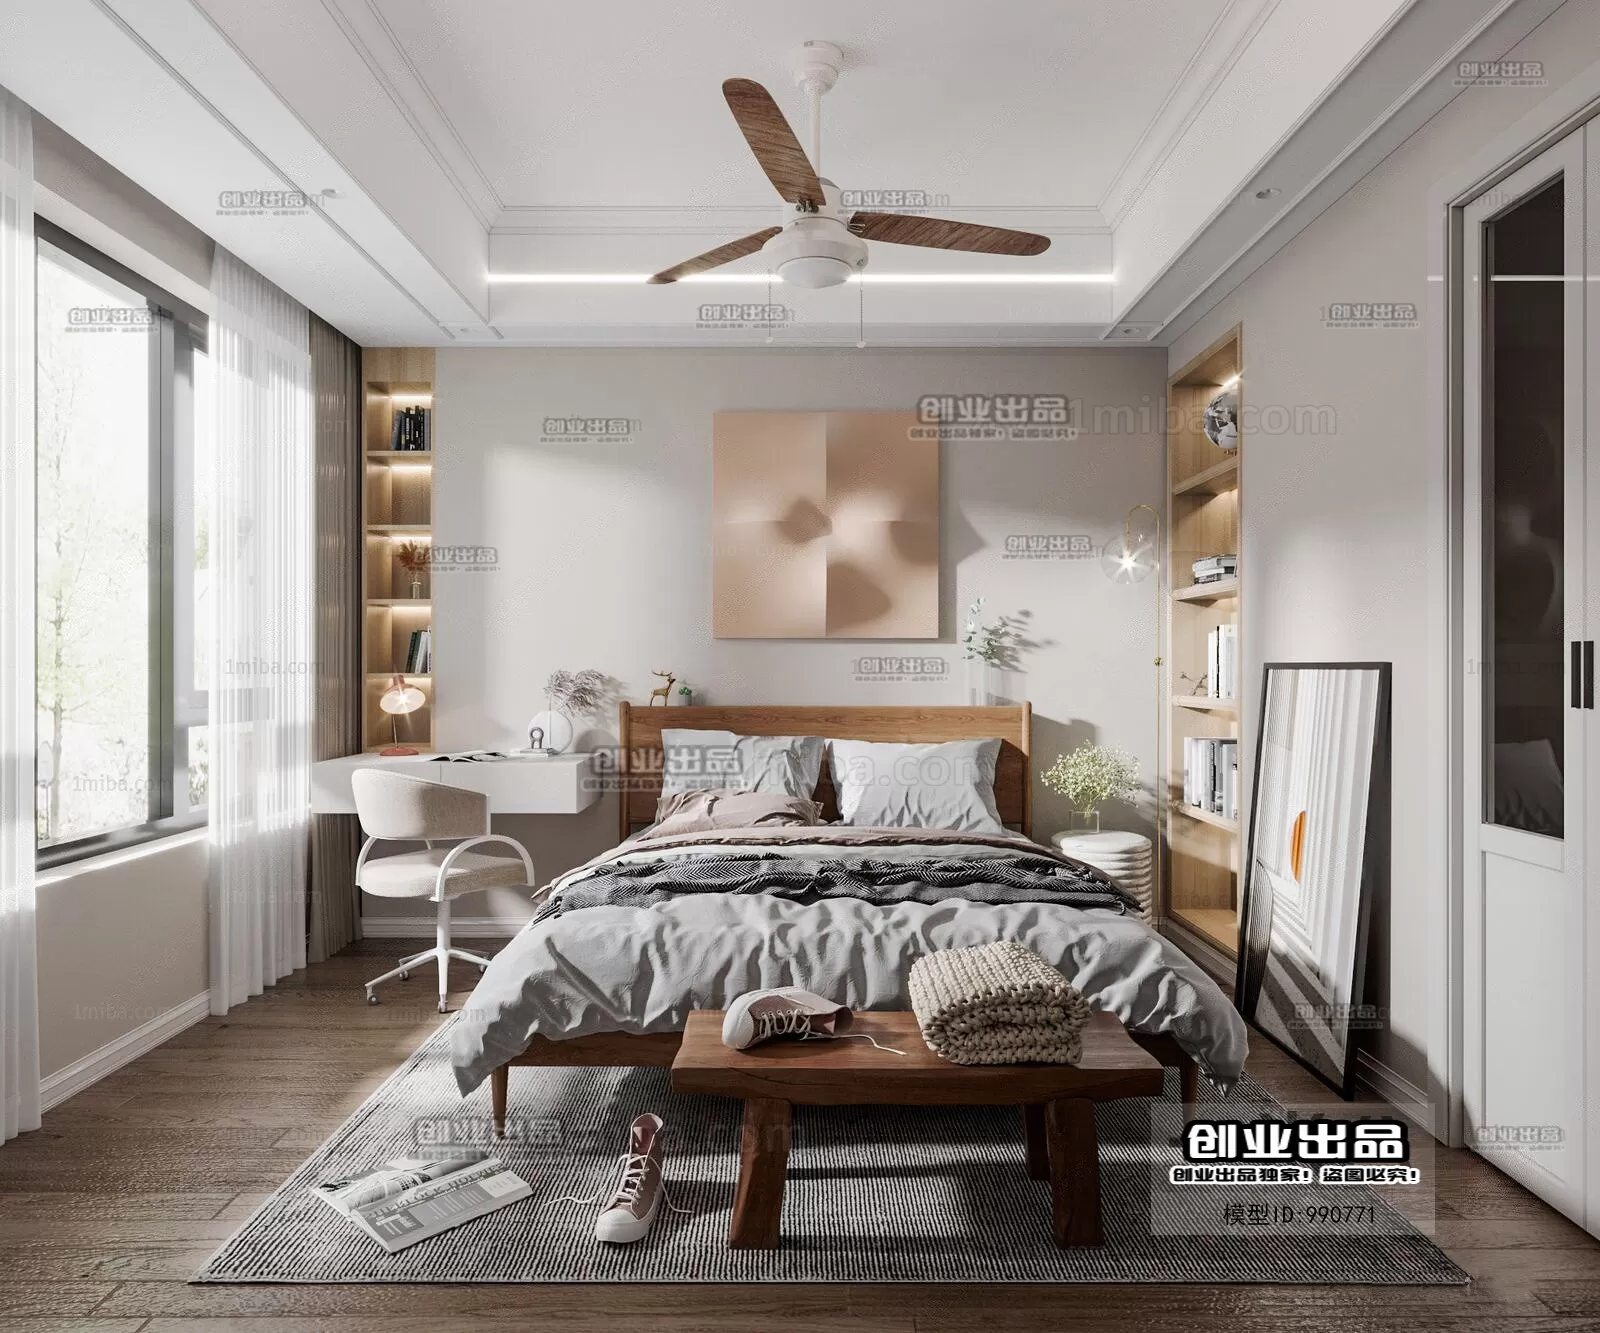 Bedroom – Scandinavian architecture – 028